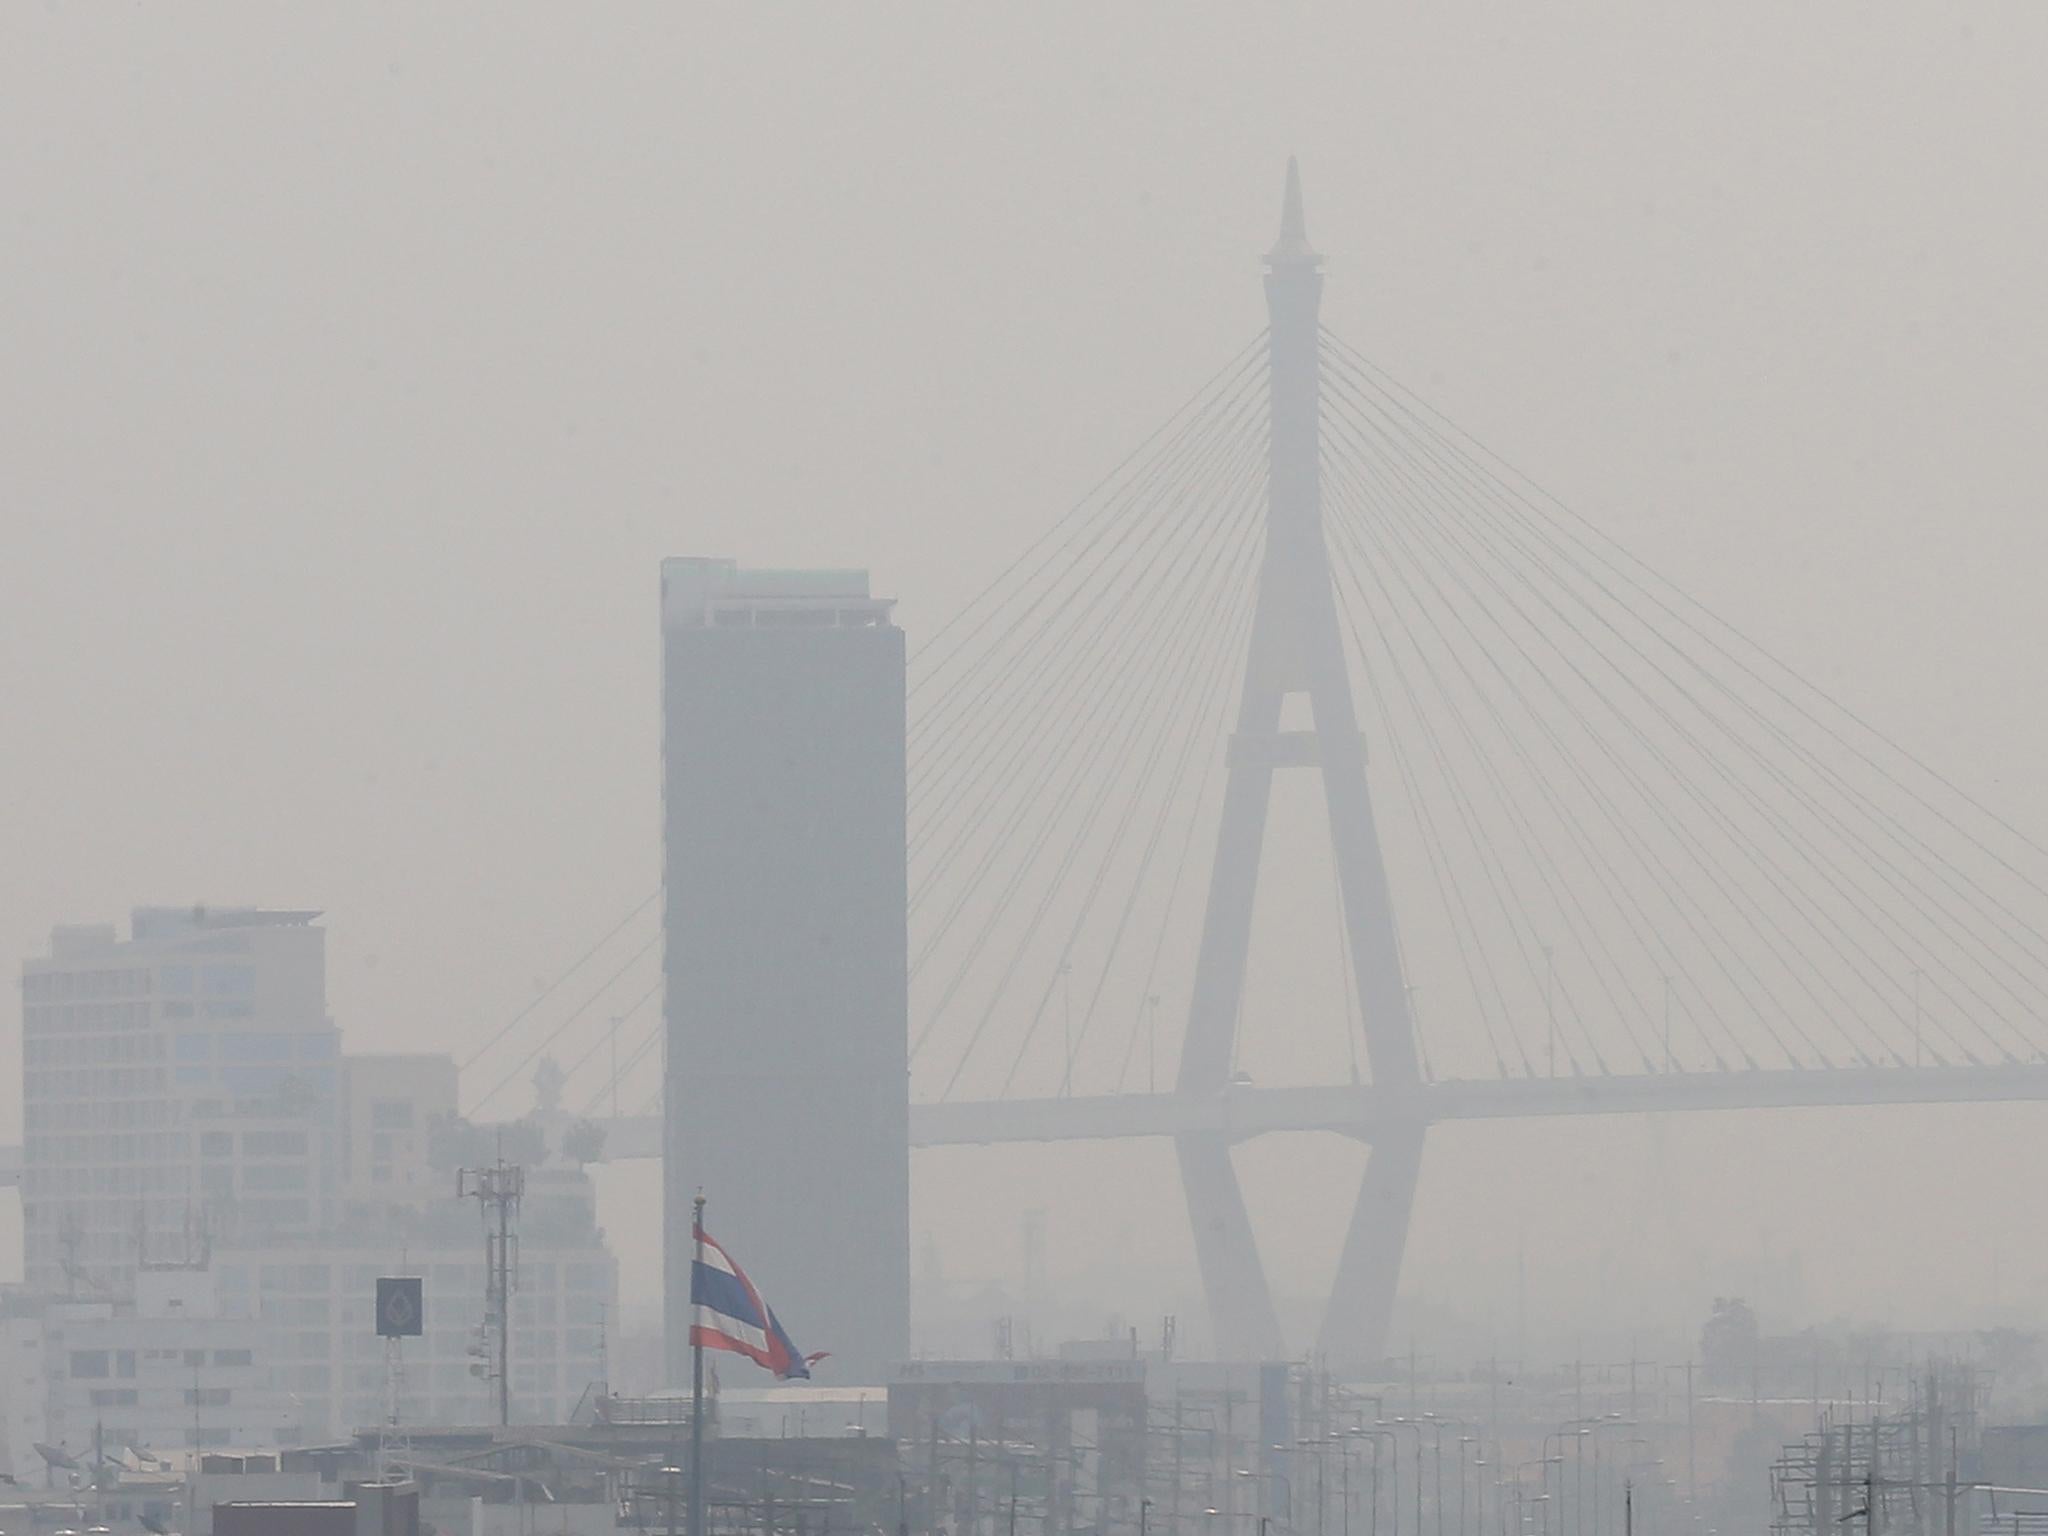 Bangkok is shrouded in dense smog